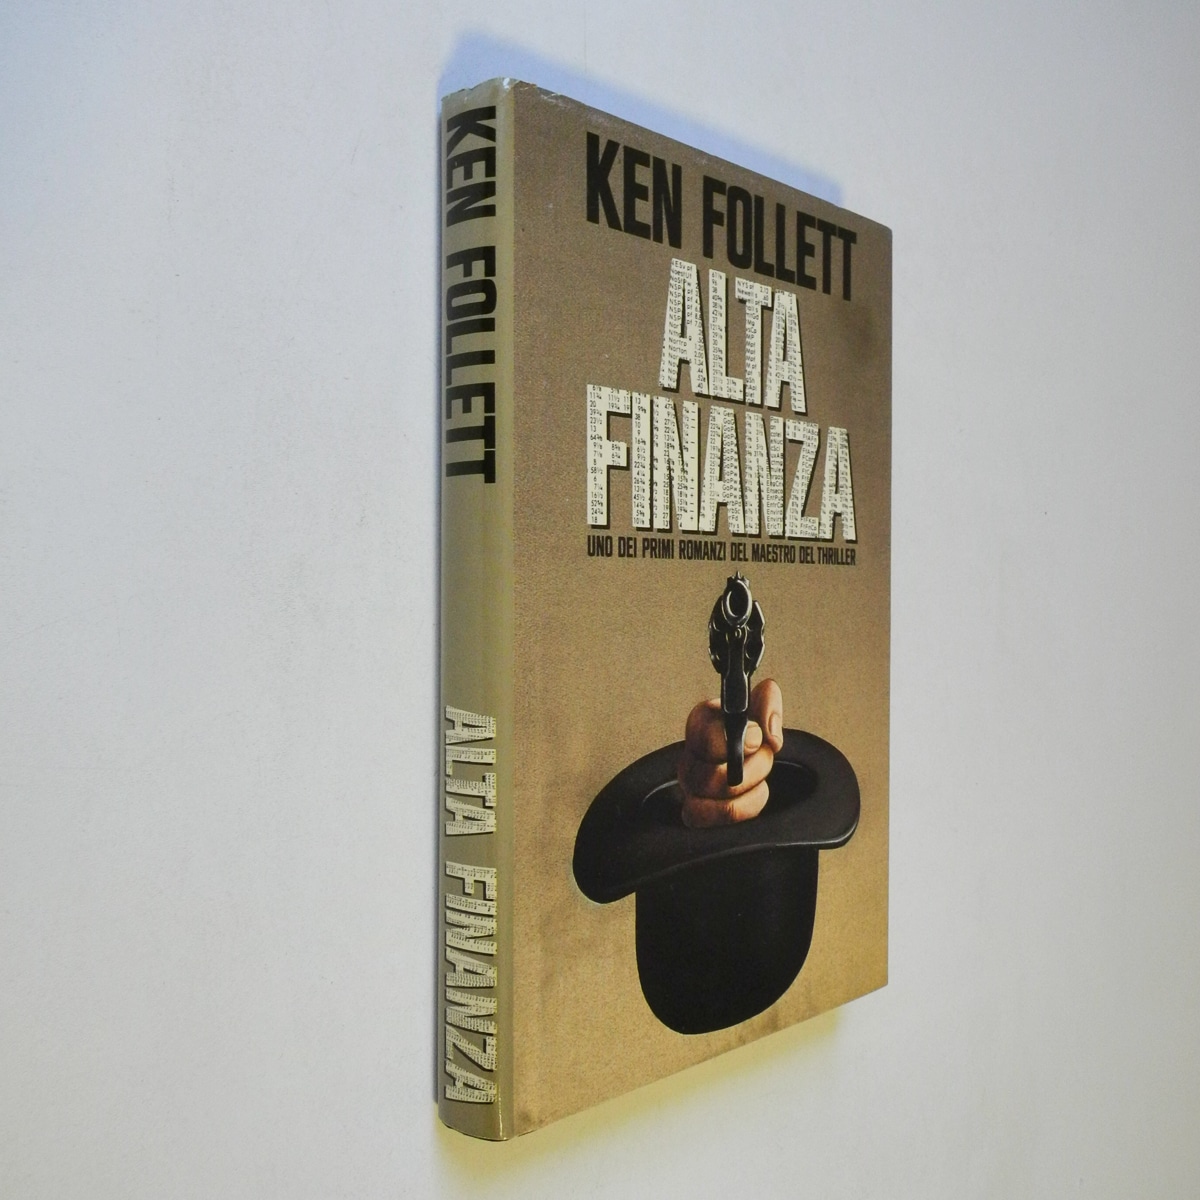 Ken Follet – Alta Finanza Cde